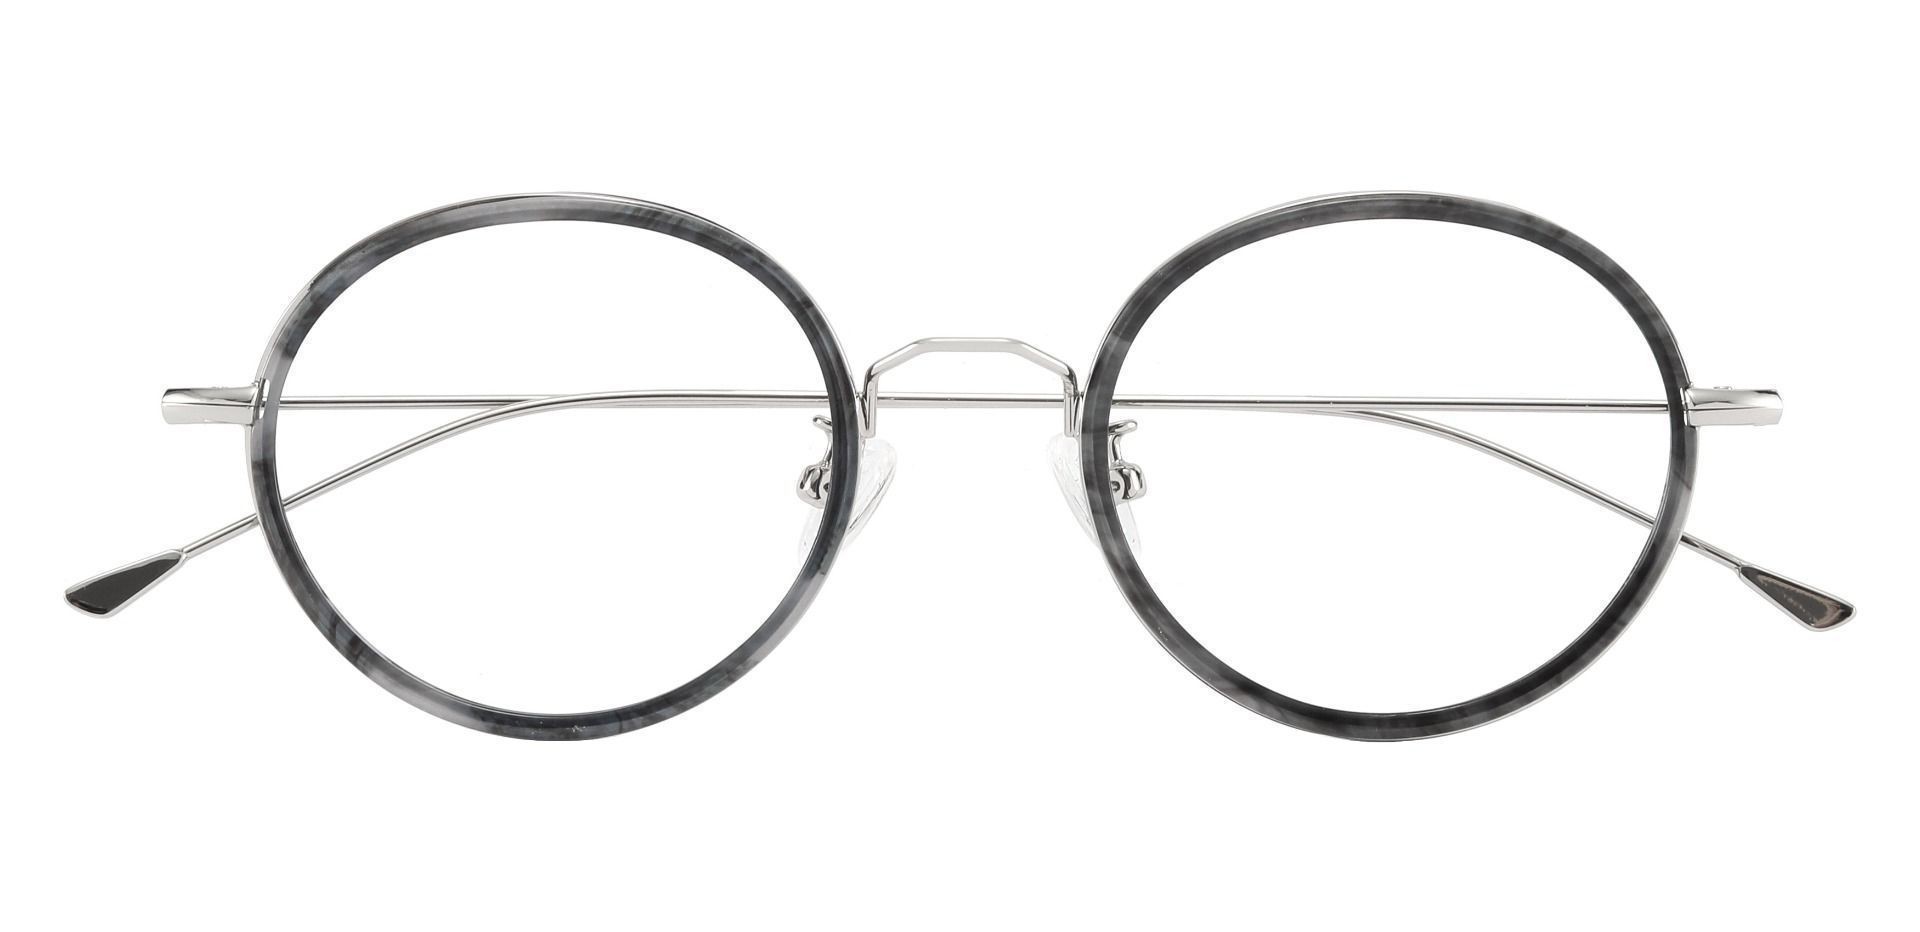 Malverne Oval Prescription Glasses - Gray